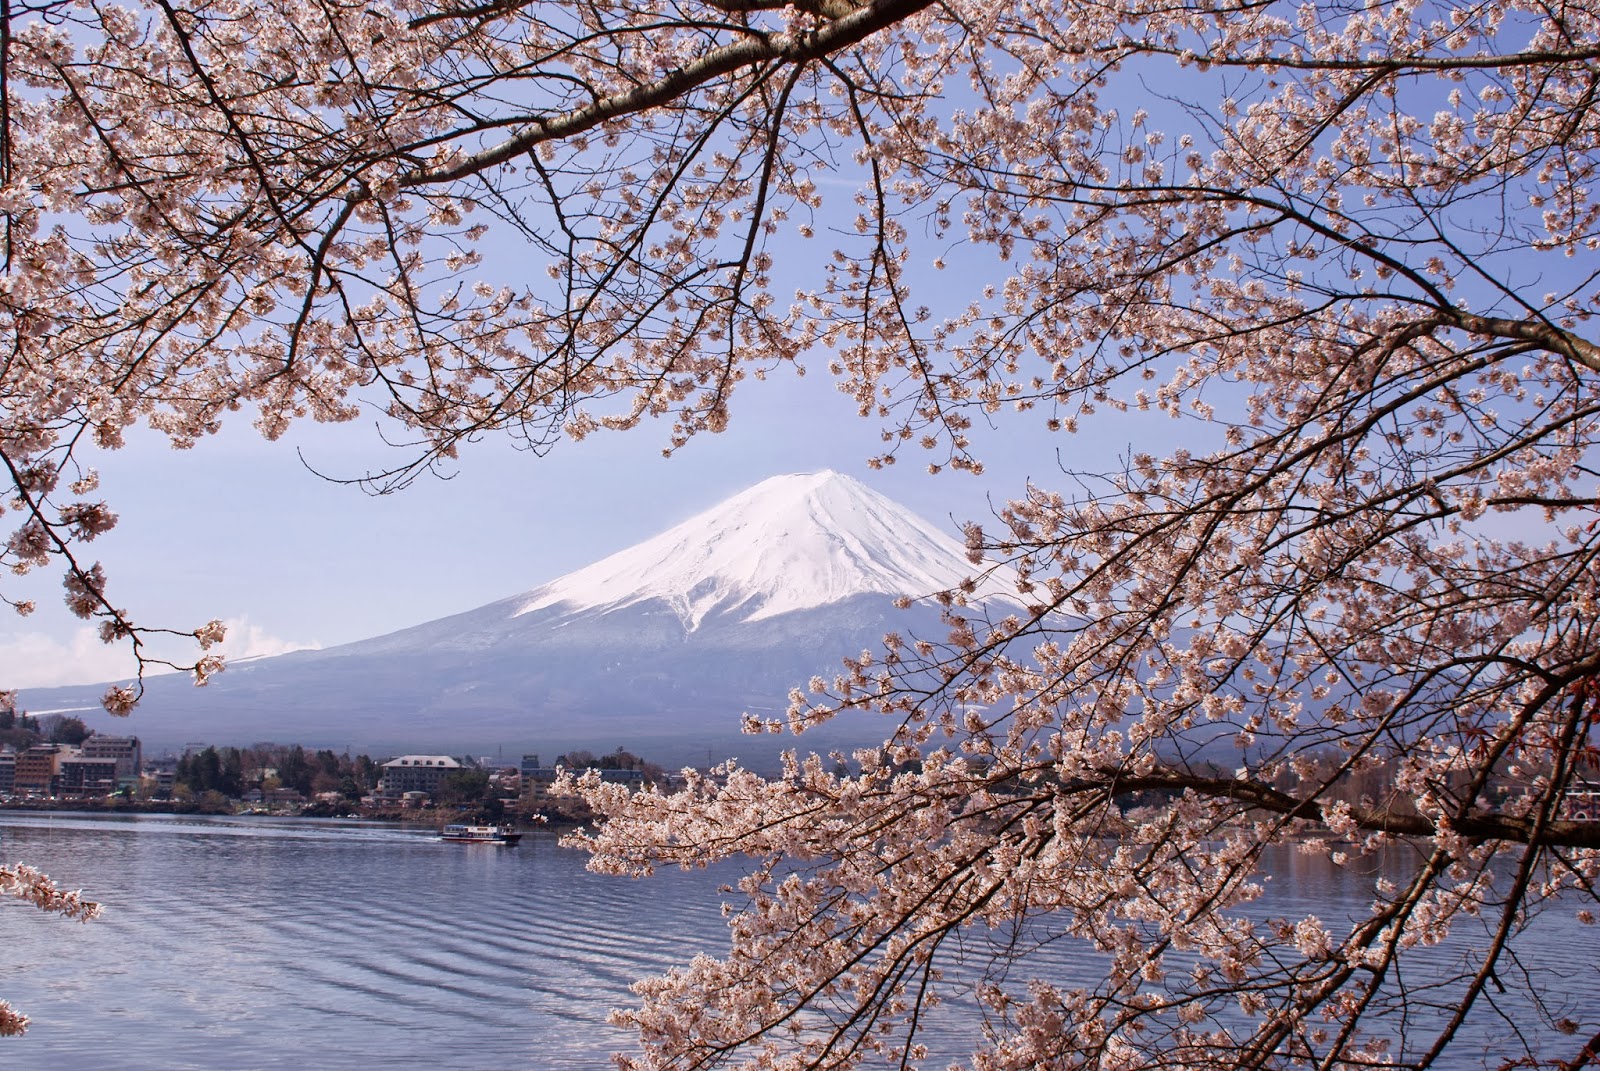 Lake_Kawaguchiko_Sakura_Mount_Fuji_2